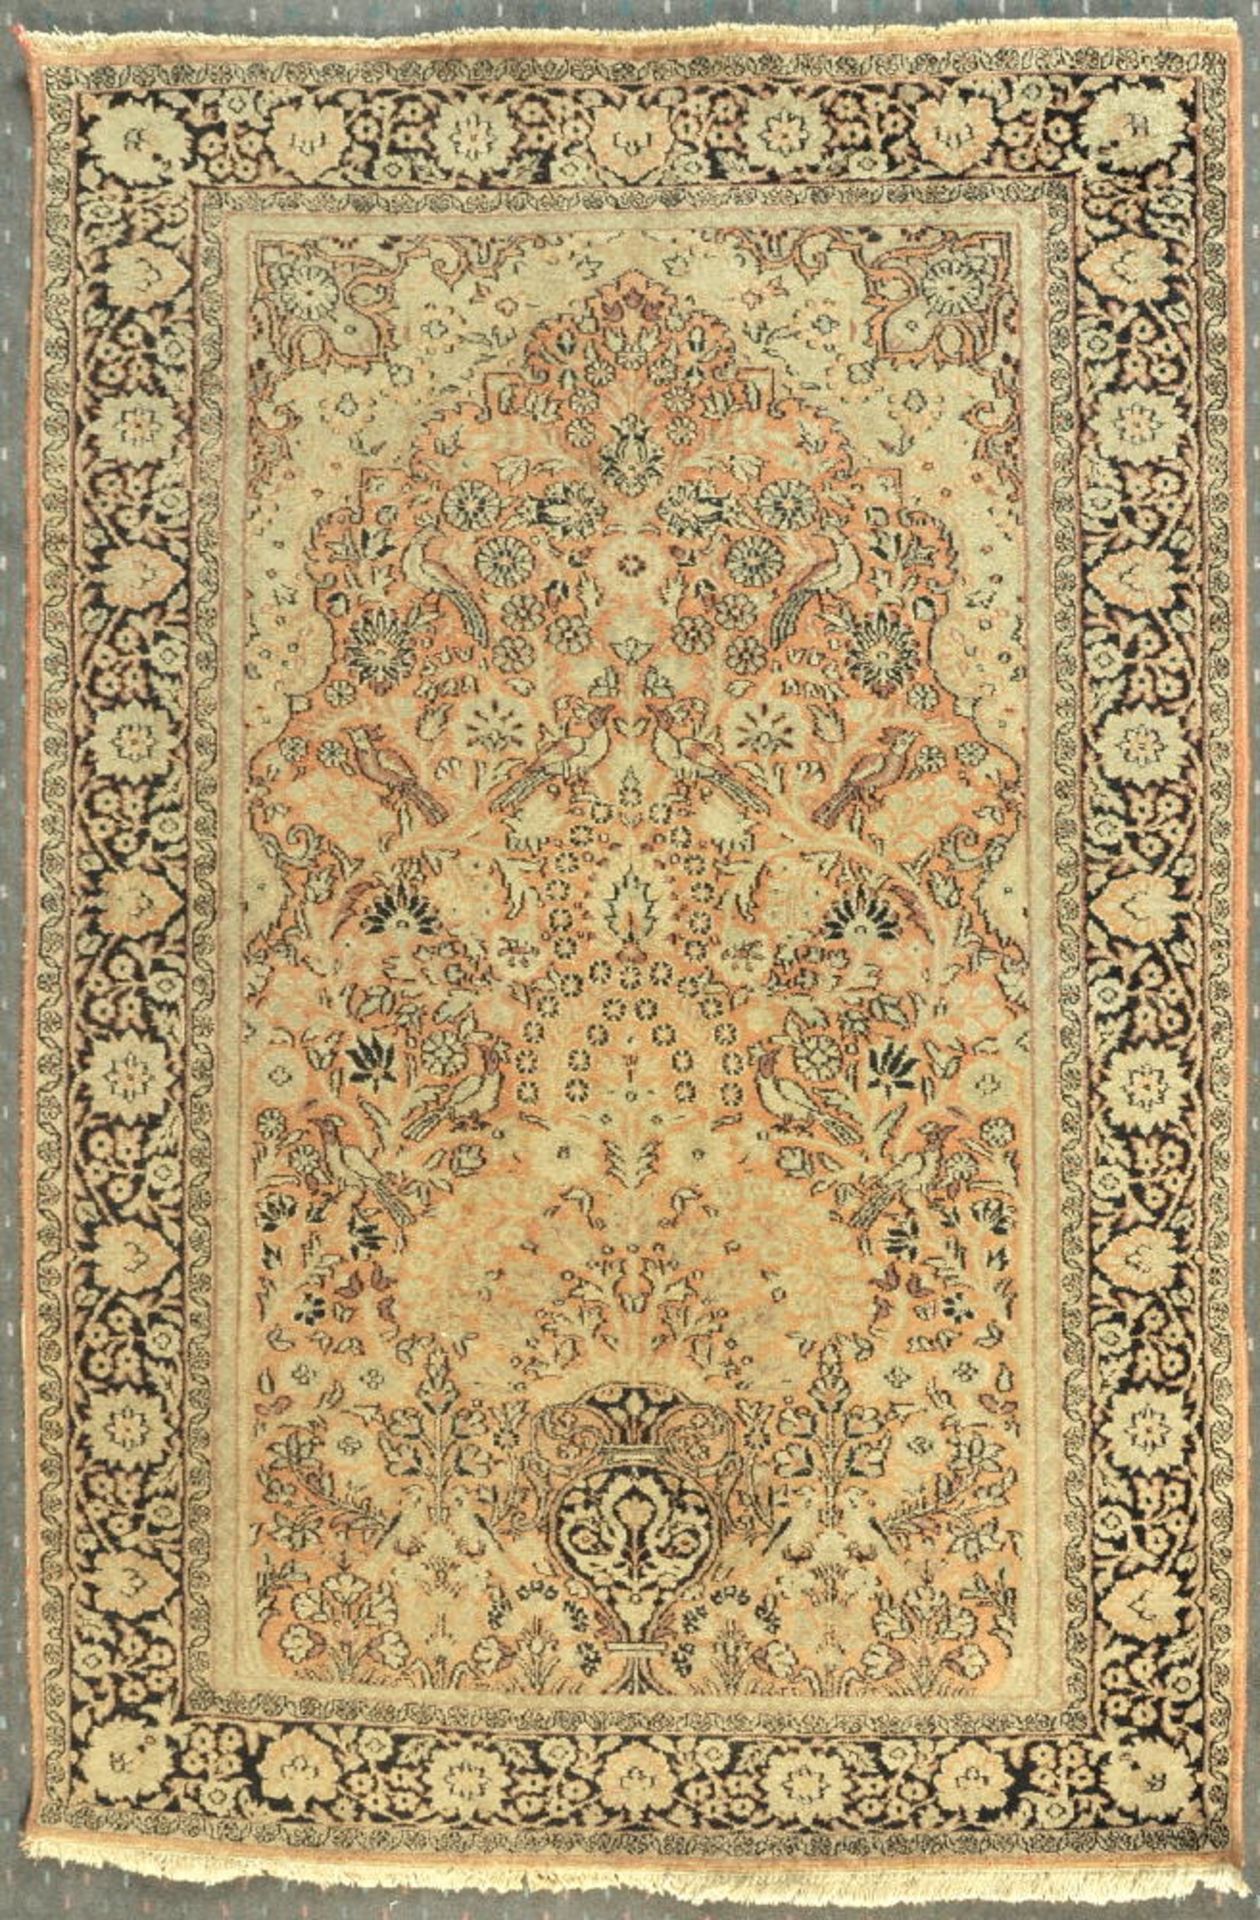 Gebets-Kaschmir-Ghoum, 123 x 182 cmälter, Wolle, feine Knüpfung, fraisegrundig, Gebetsgiebel mit